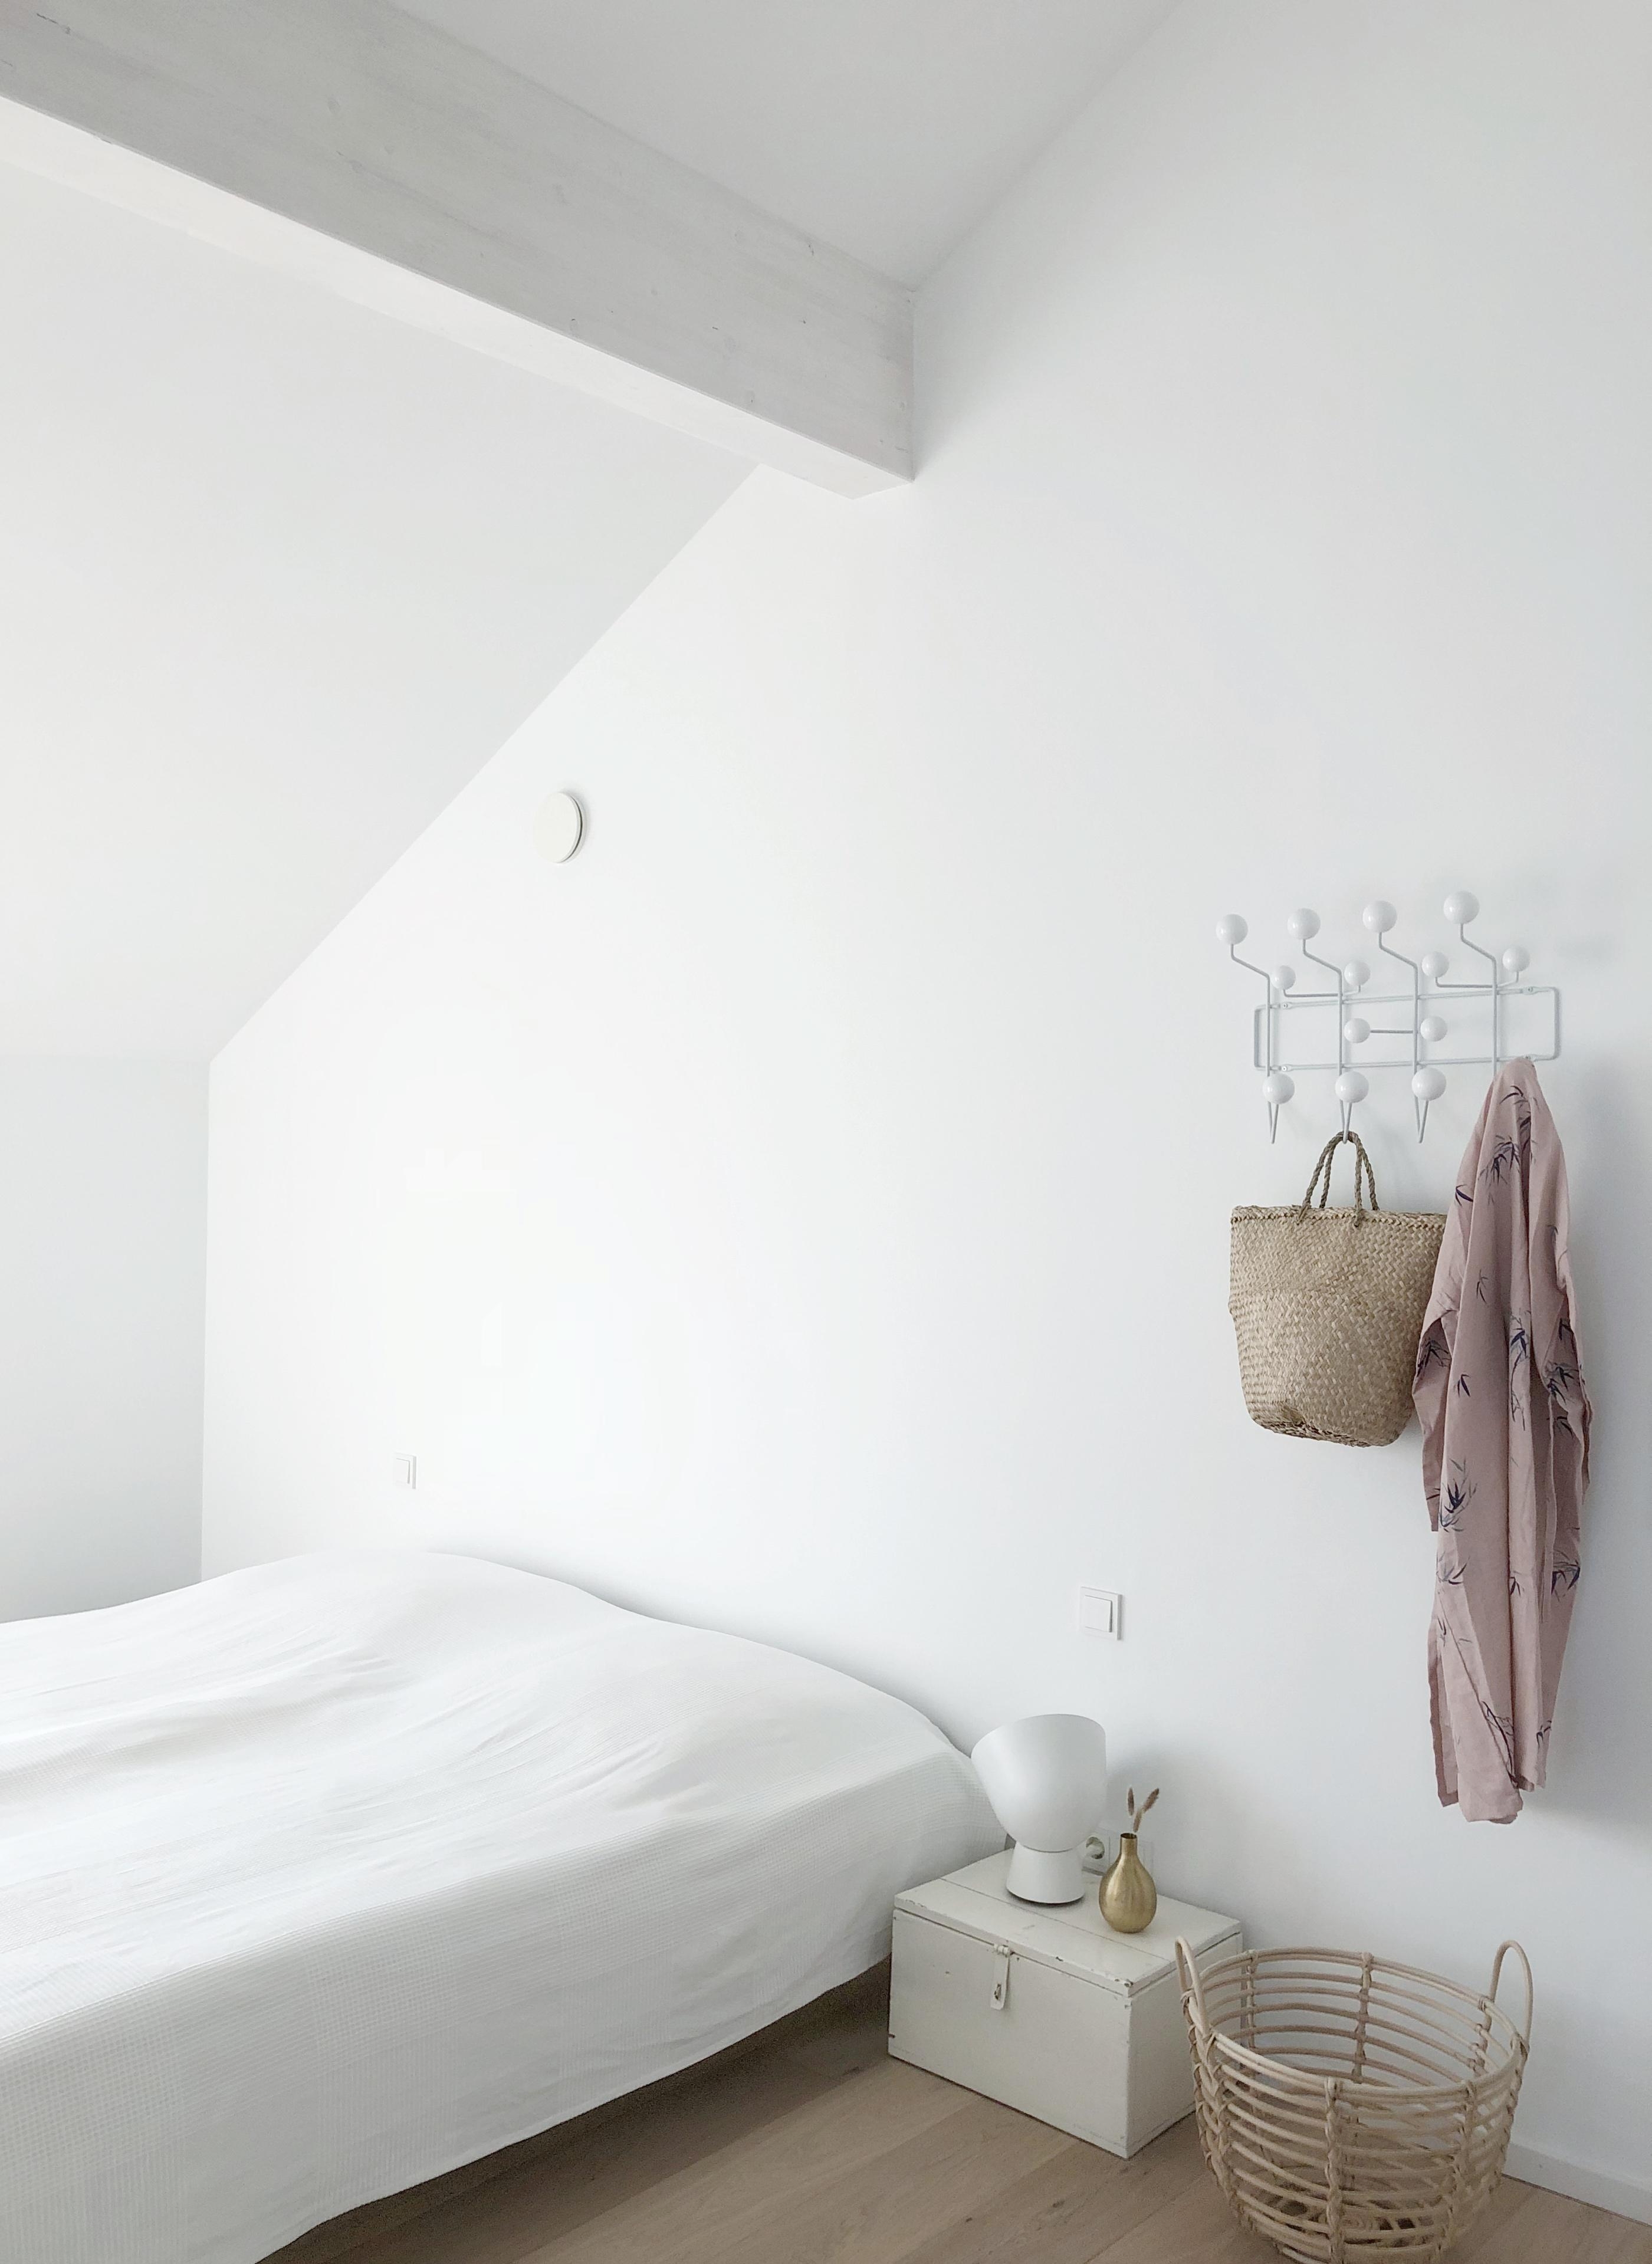 Wieder zuhause
#zuhause#whitehome#minimalism#bedroom